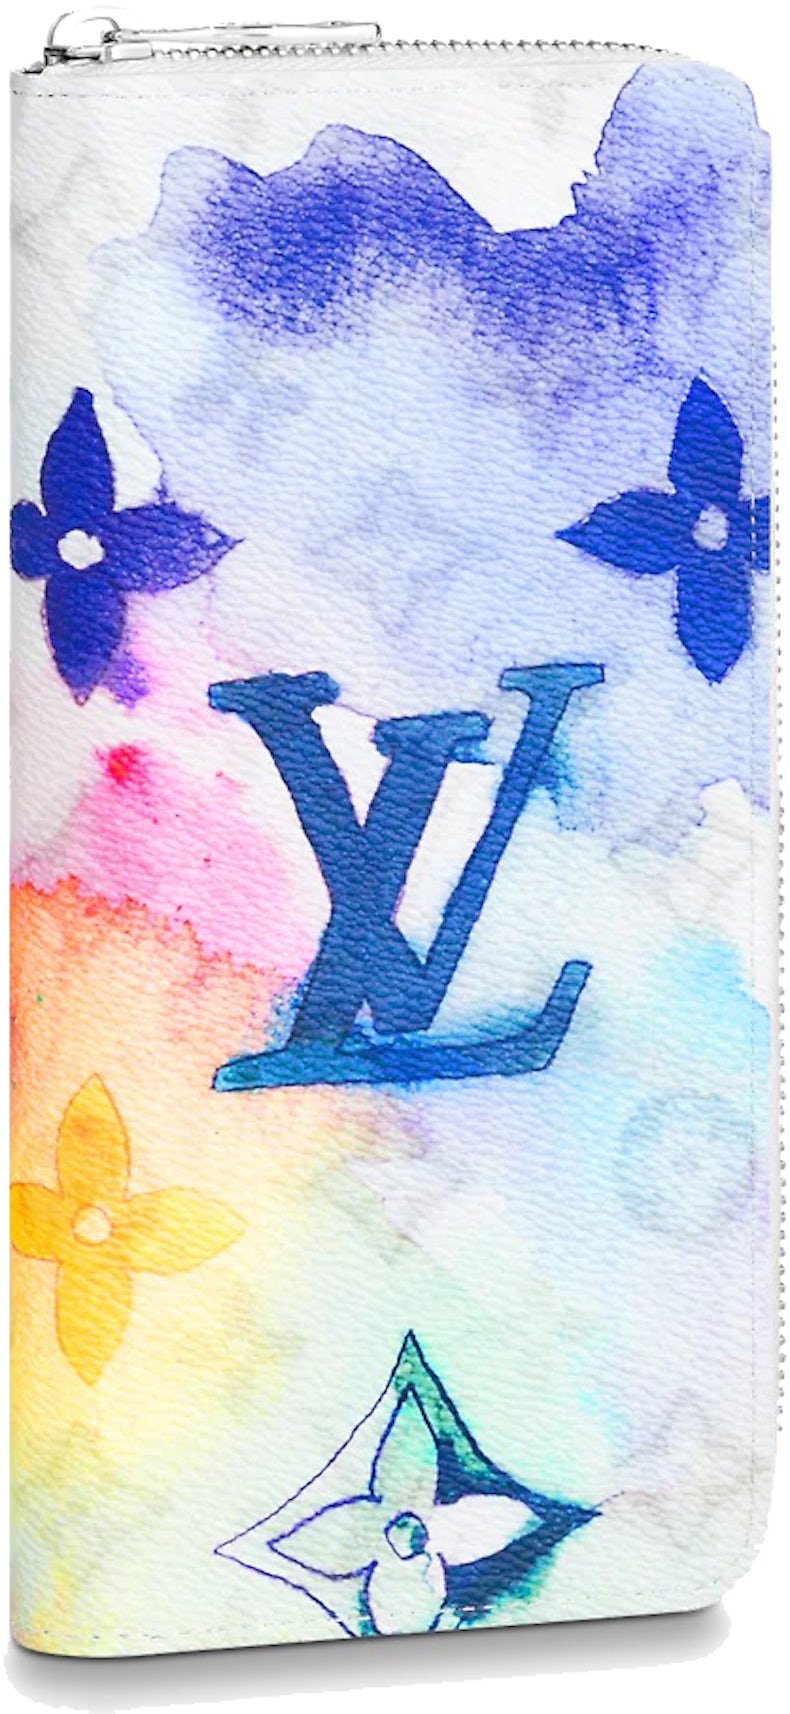 Louis Vuitton Multicolor Light iPhone 12 Pro Case